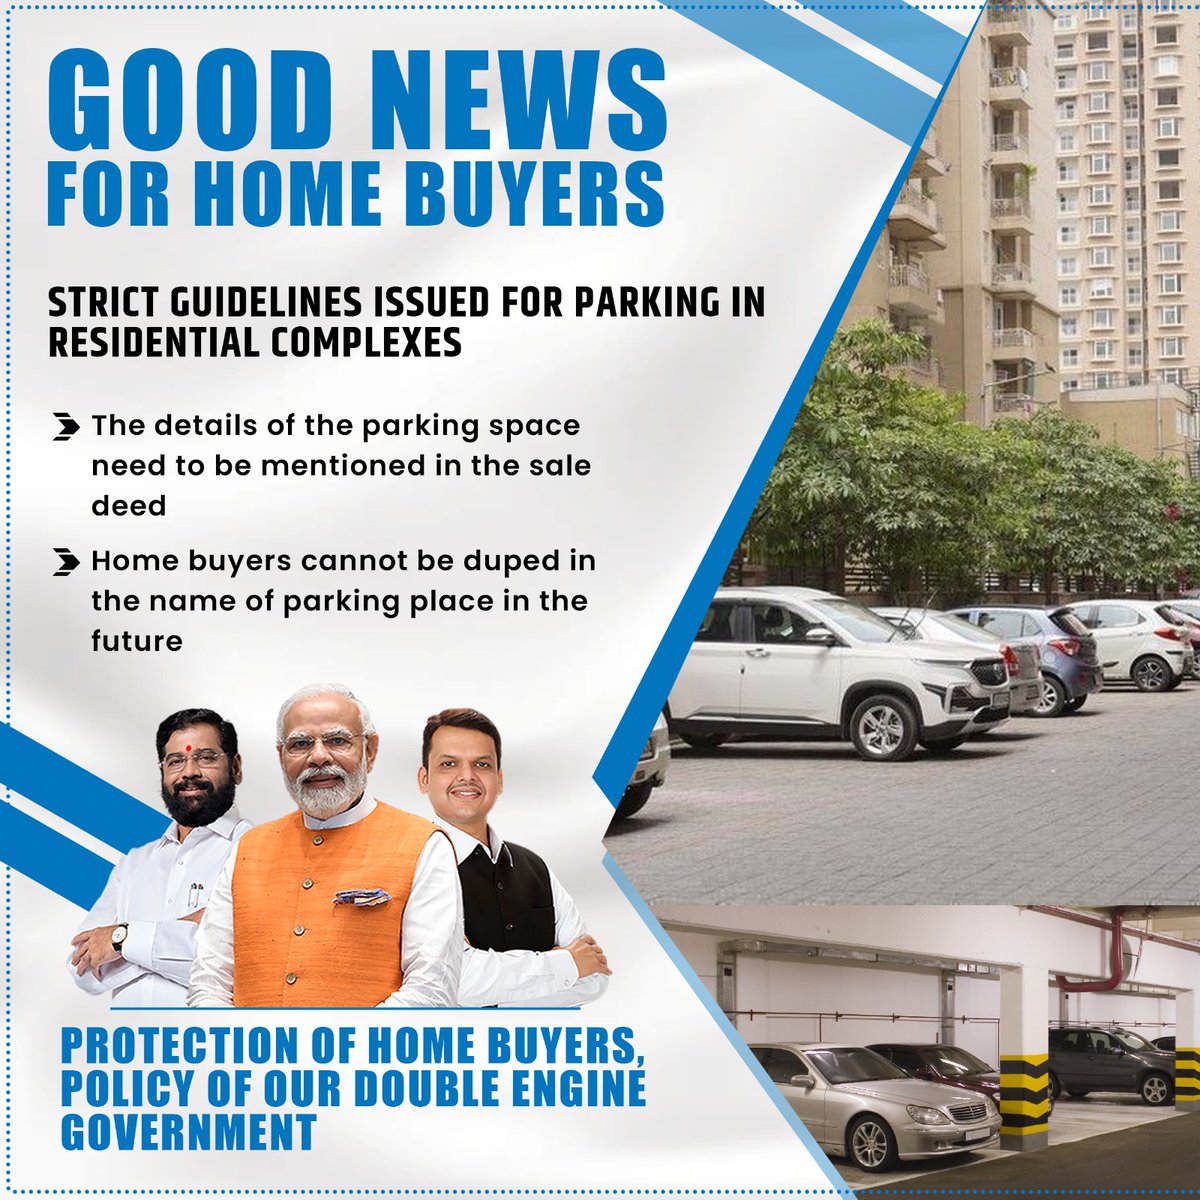 महाराष्ट्र में घर खरीदने वालों के लिए बड़ी खुशखबरी! आवासीय परिसरों में पार्किंग के लिए सख्त दिशा-निर्देशों के साथ, पारदर्शिता और निष्पक्षता सुनिश्चित की गई है। उपभोक्ता संरक्षण और जवाबदेही को प्राथमिकता देने के लिए सरकार को बधाई।